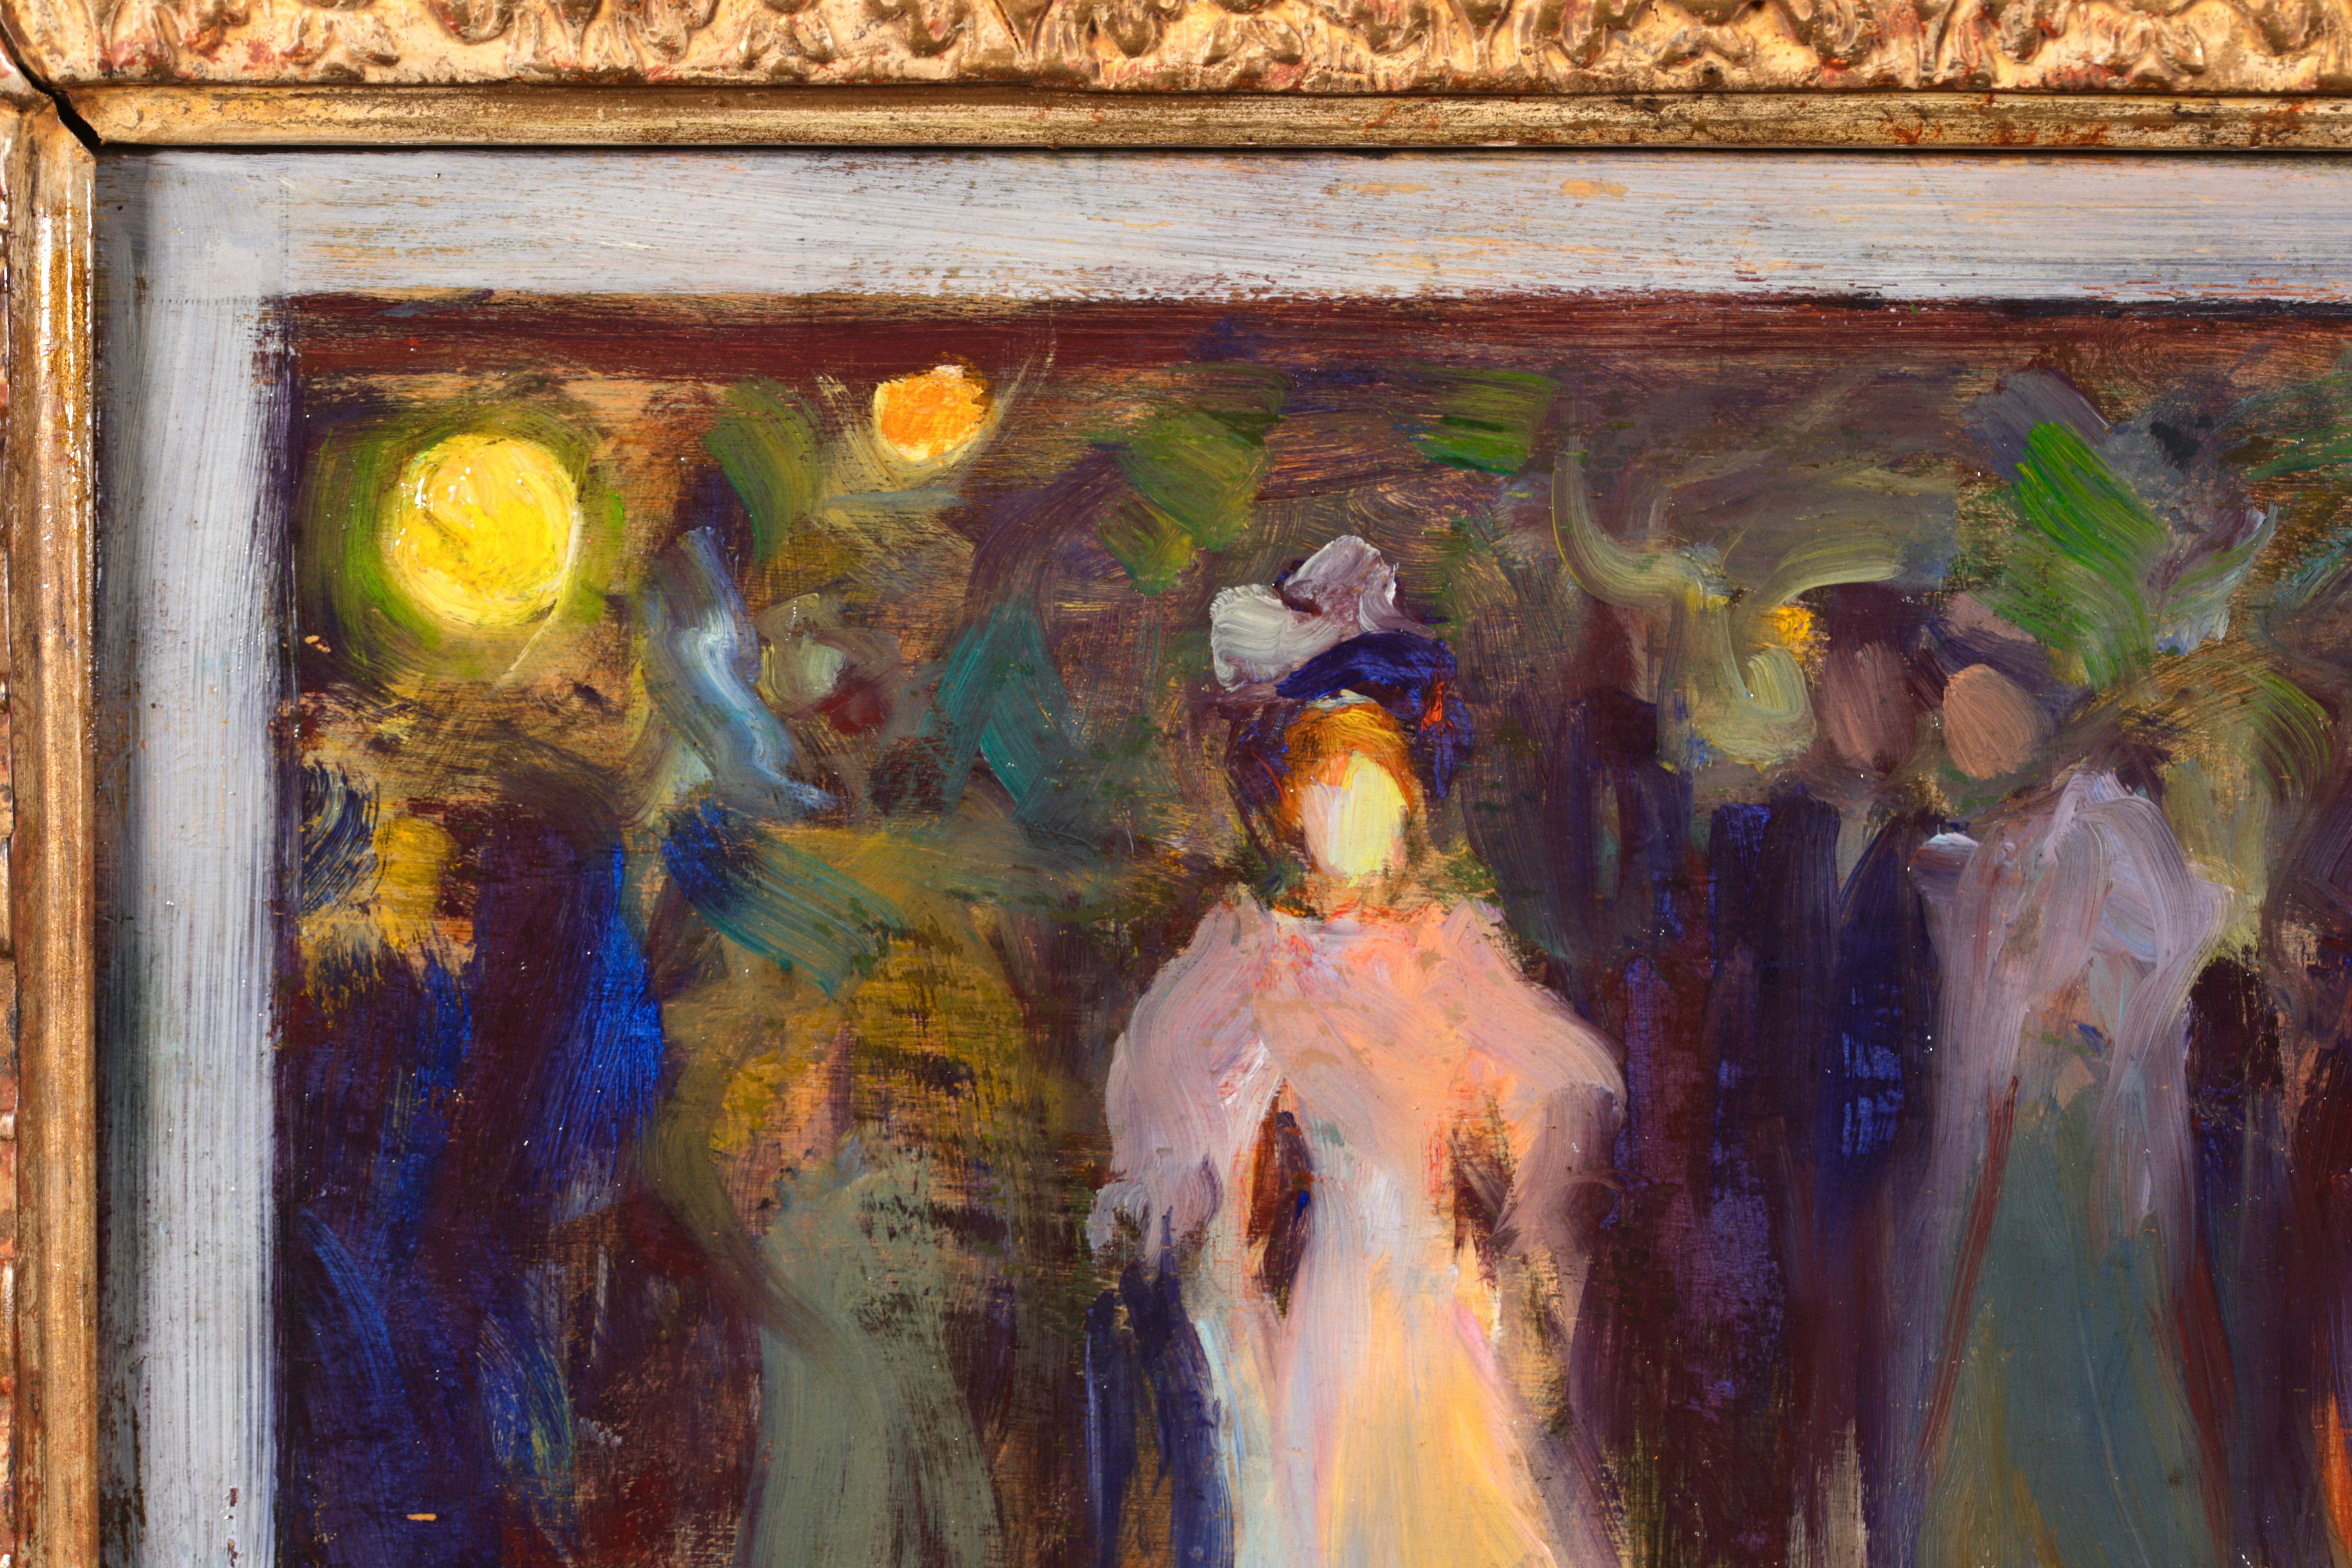 Huile figurative post impressionniste signée sur panneau vers 1910 par le peintre français Henri Le Sidaner. Cette pièce absolument magnifique représente des personnes élégantes se promenant le soir dans un parc. Le chemin est éclairé par la lueur